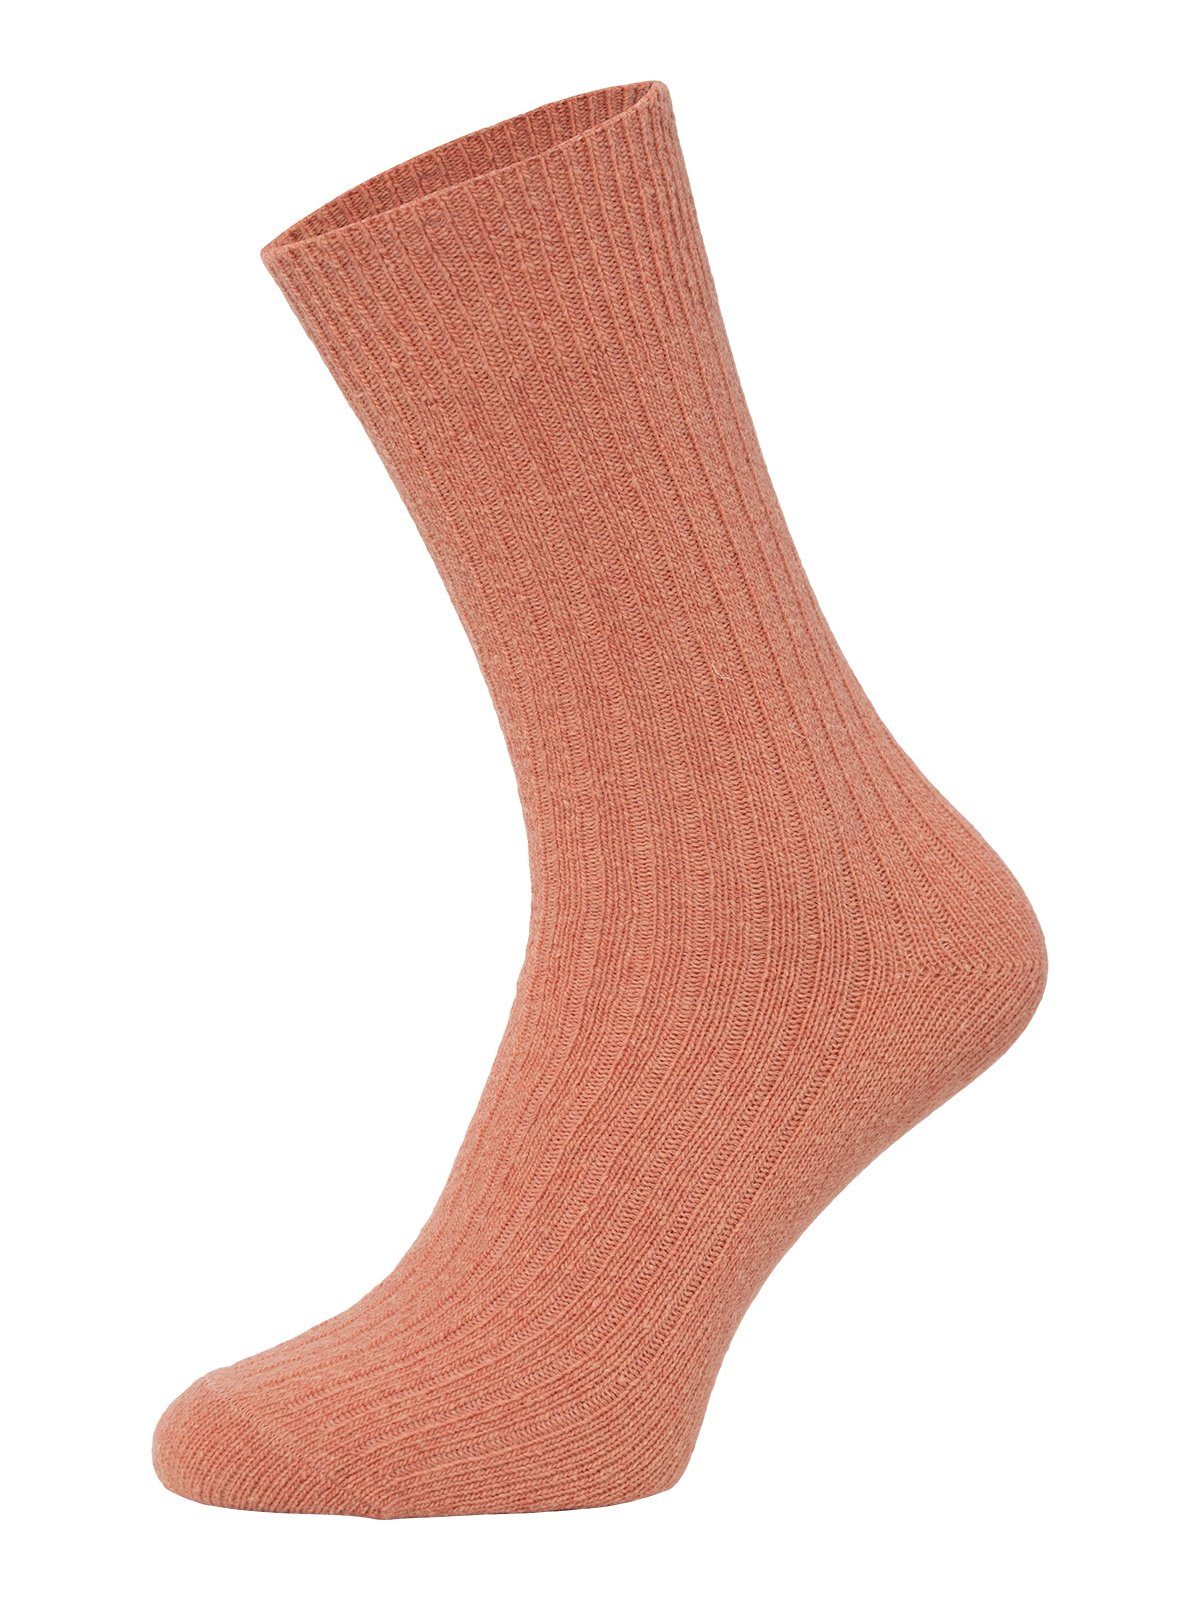 HomeOfSocks Socken Dünne Bunte Wollsocken mit 72% Wollanteil Hochwertige Uni Wollsocken Dünn Bunt Druckarm Altrosa